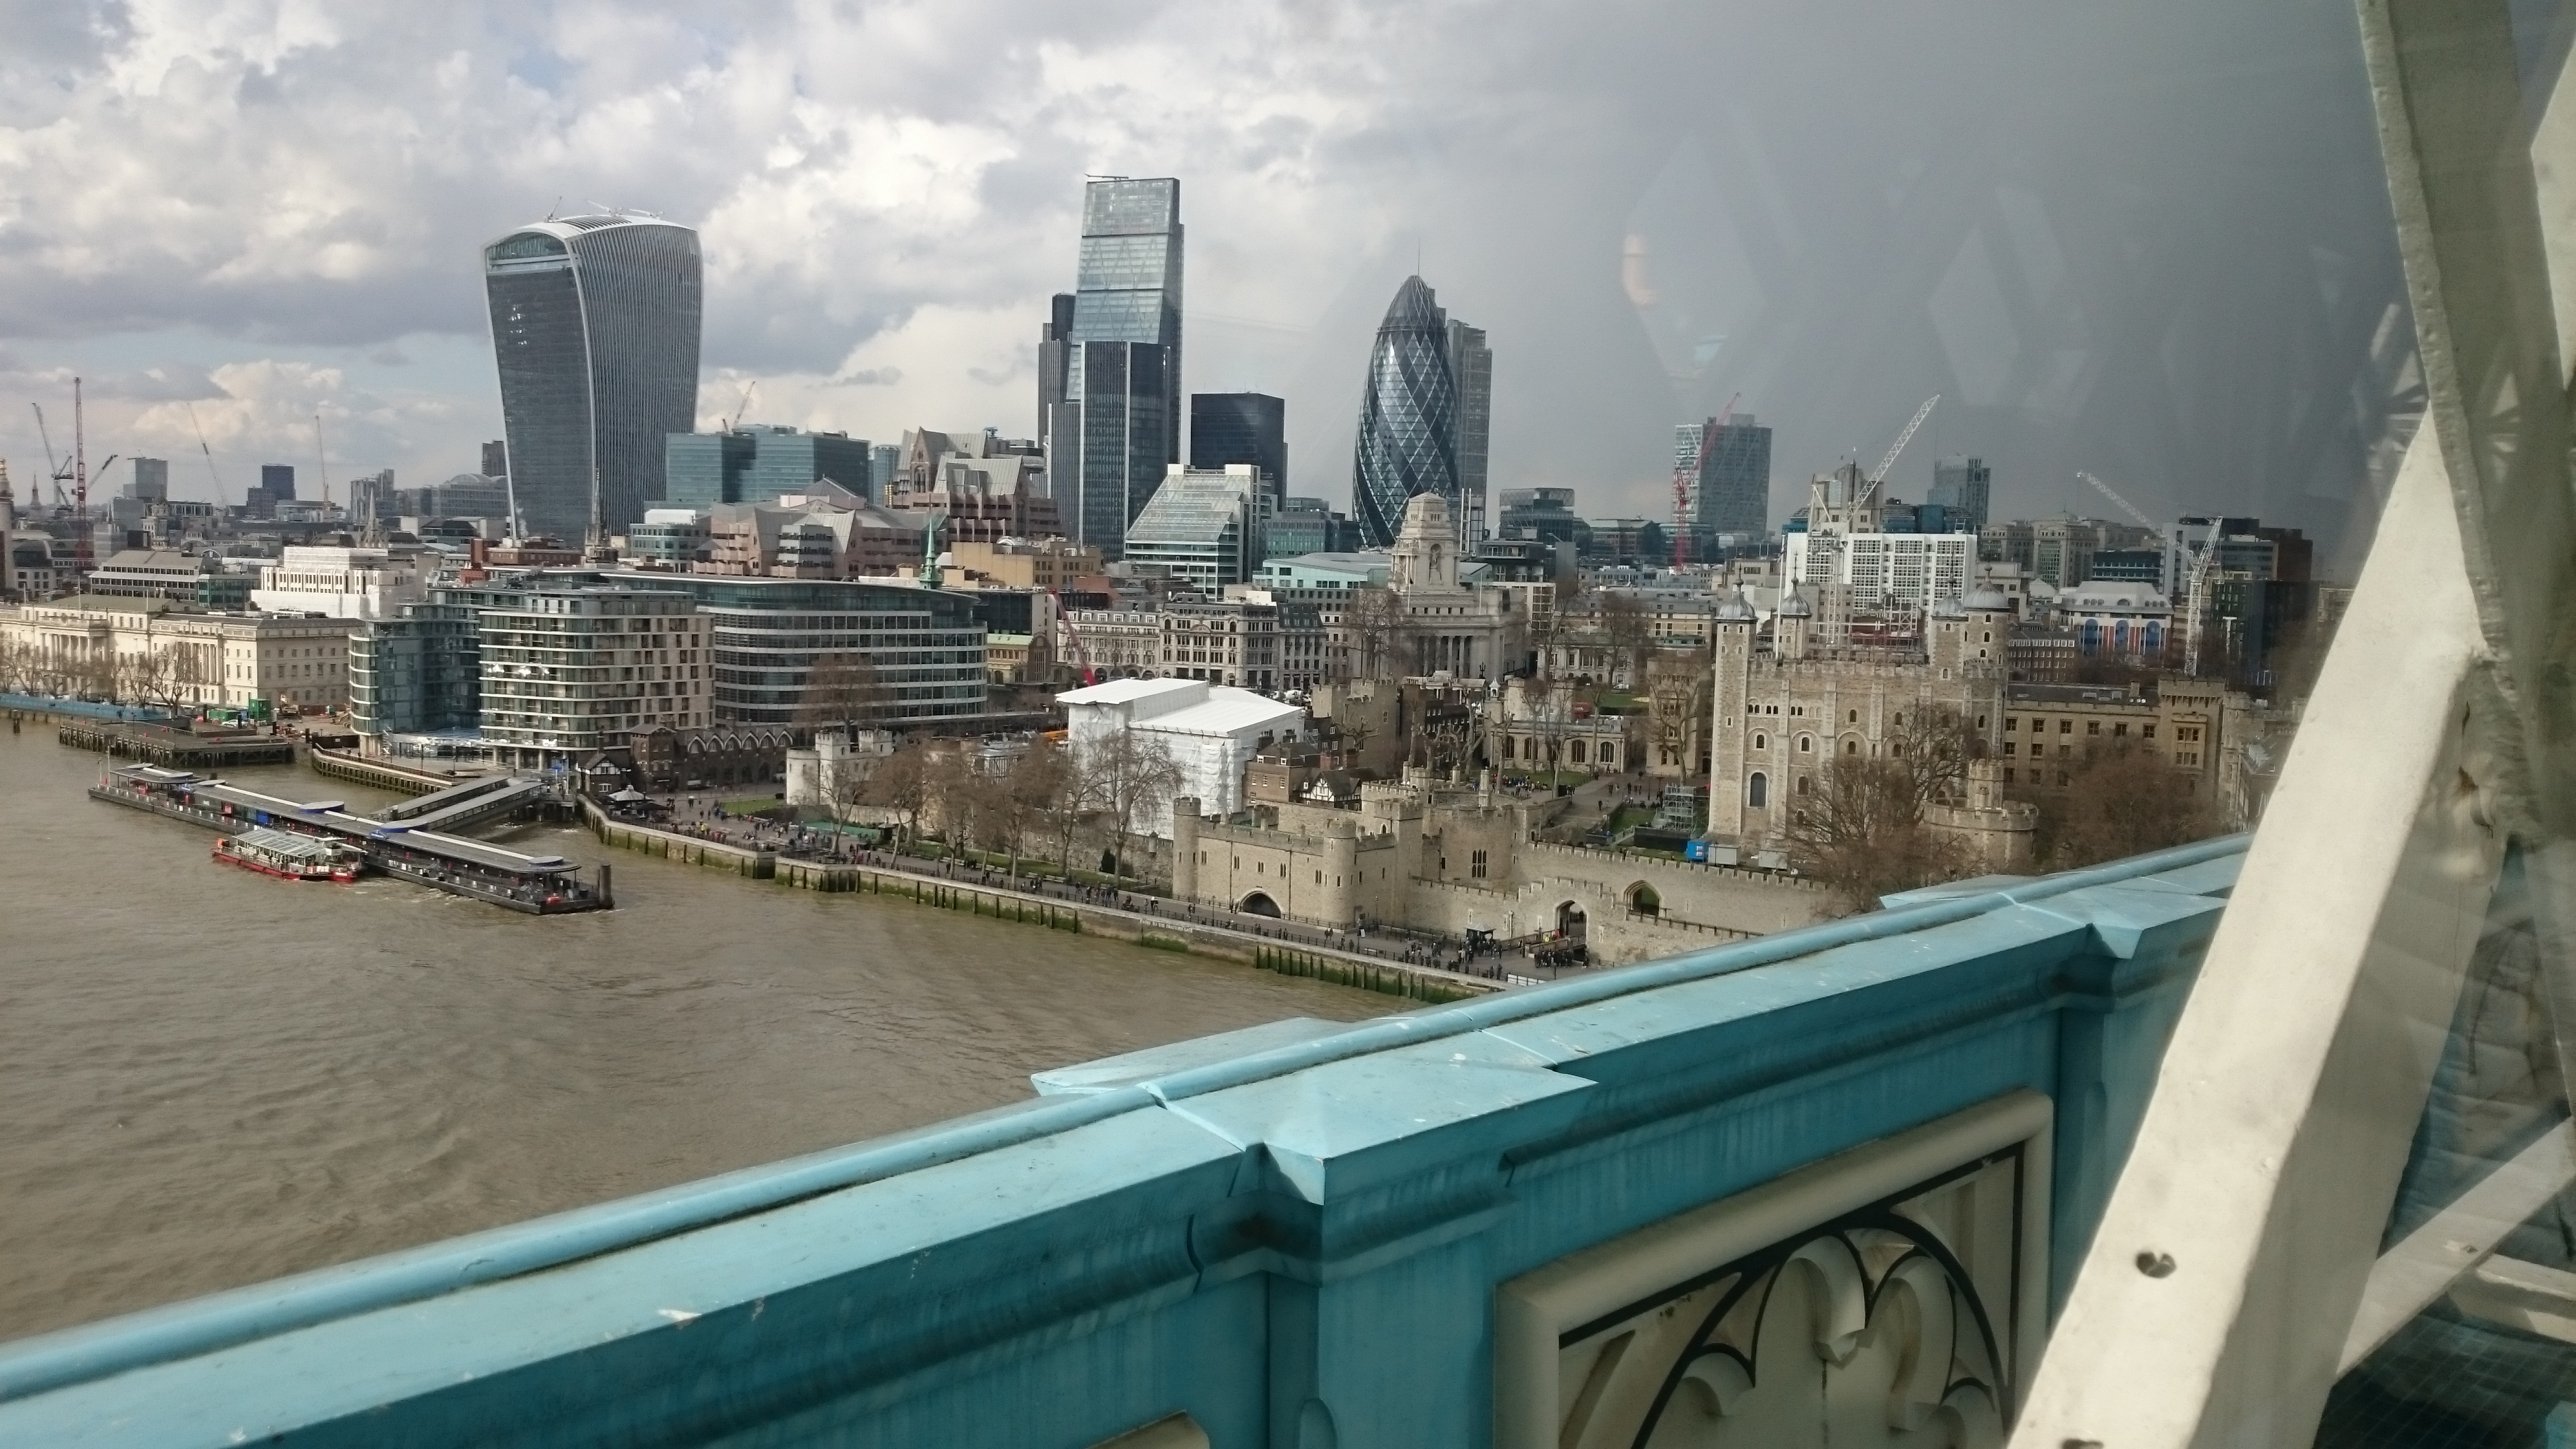 dsc 0714 - Una visita al Tower Bridge en Londres